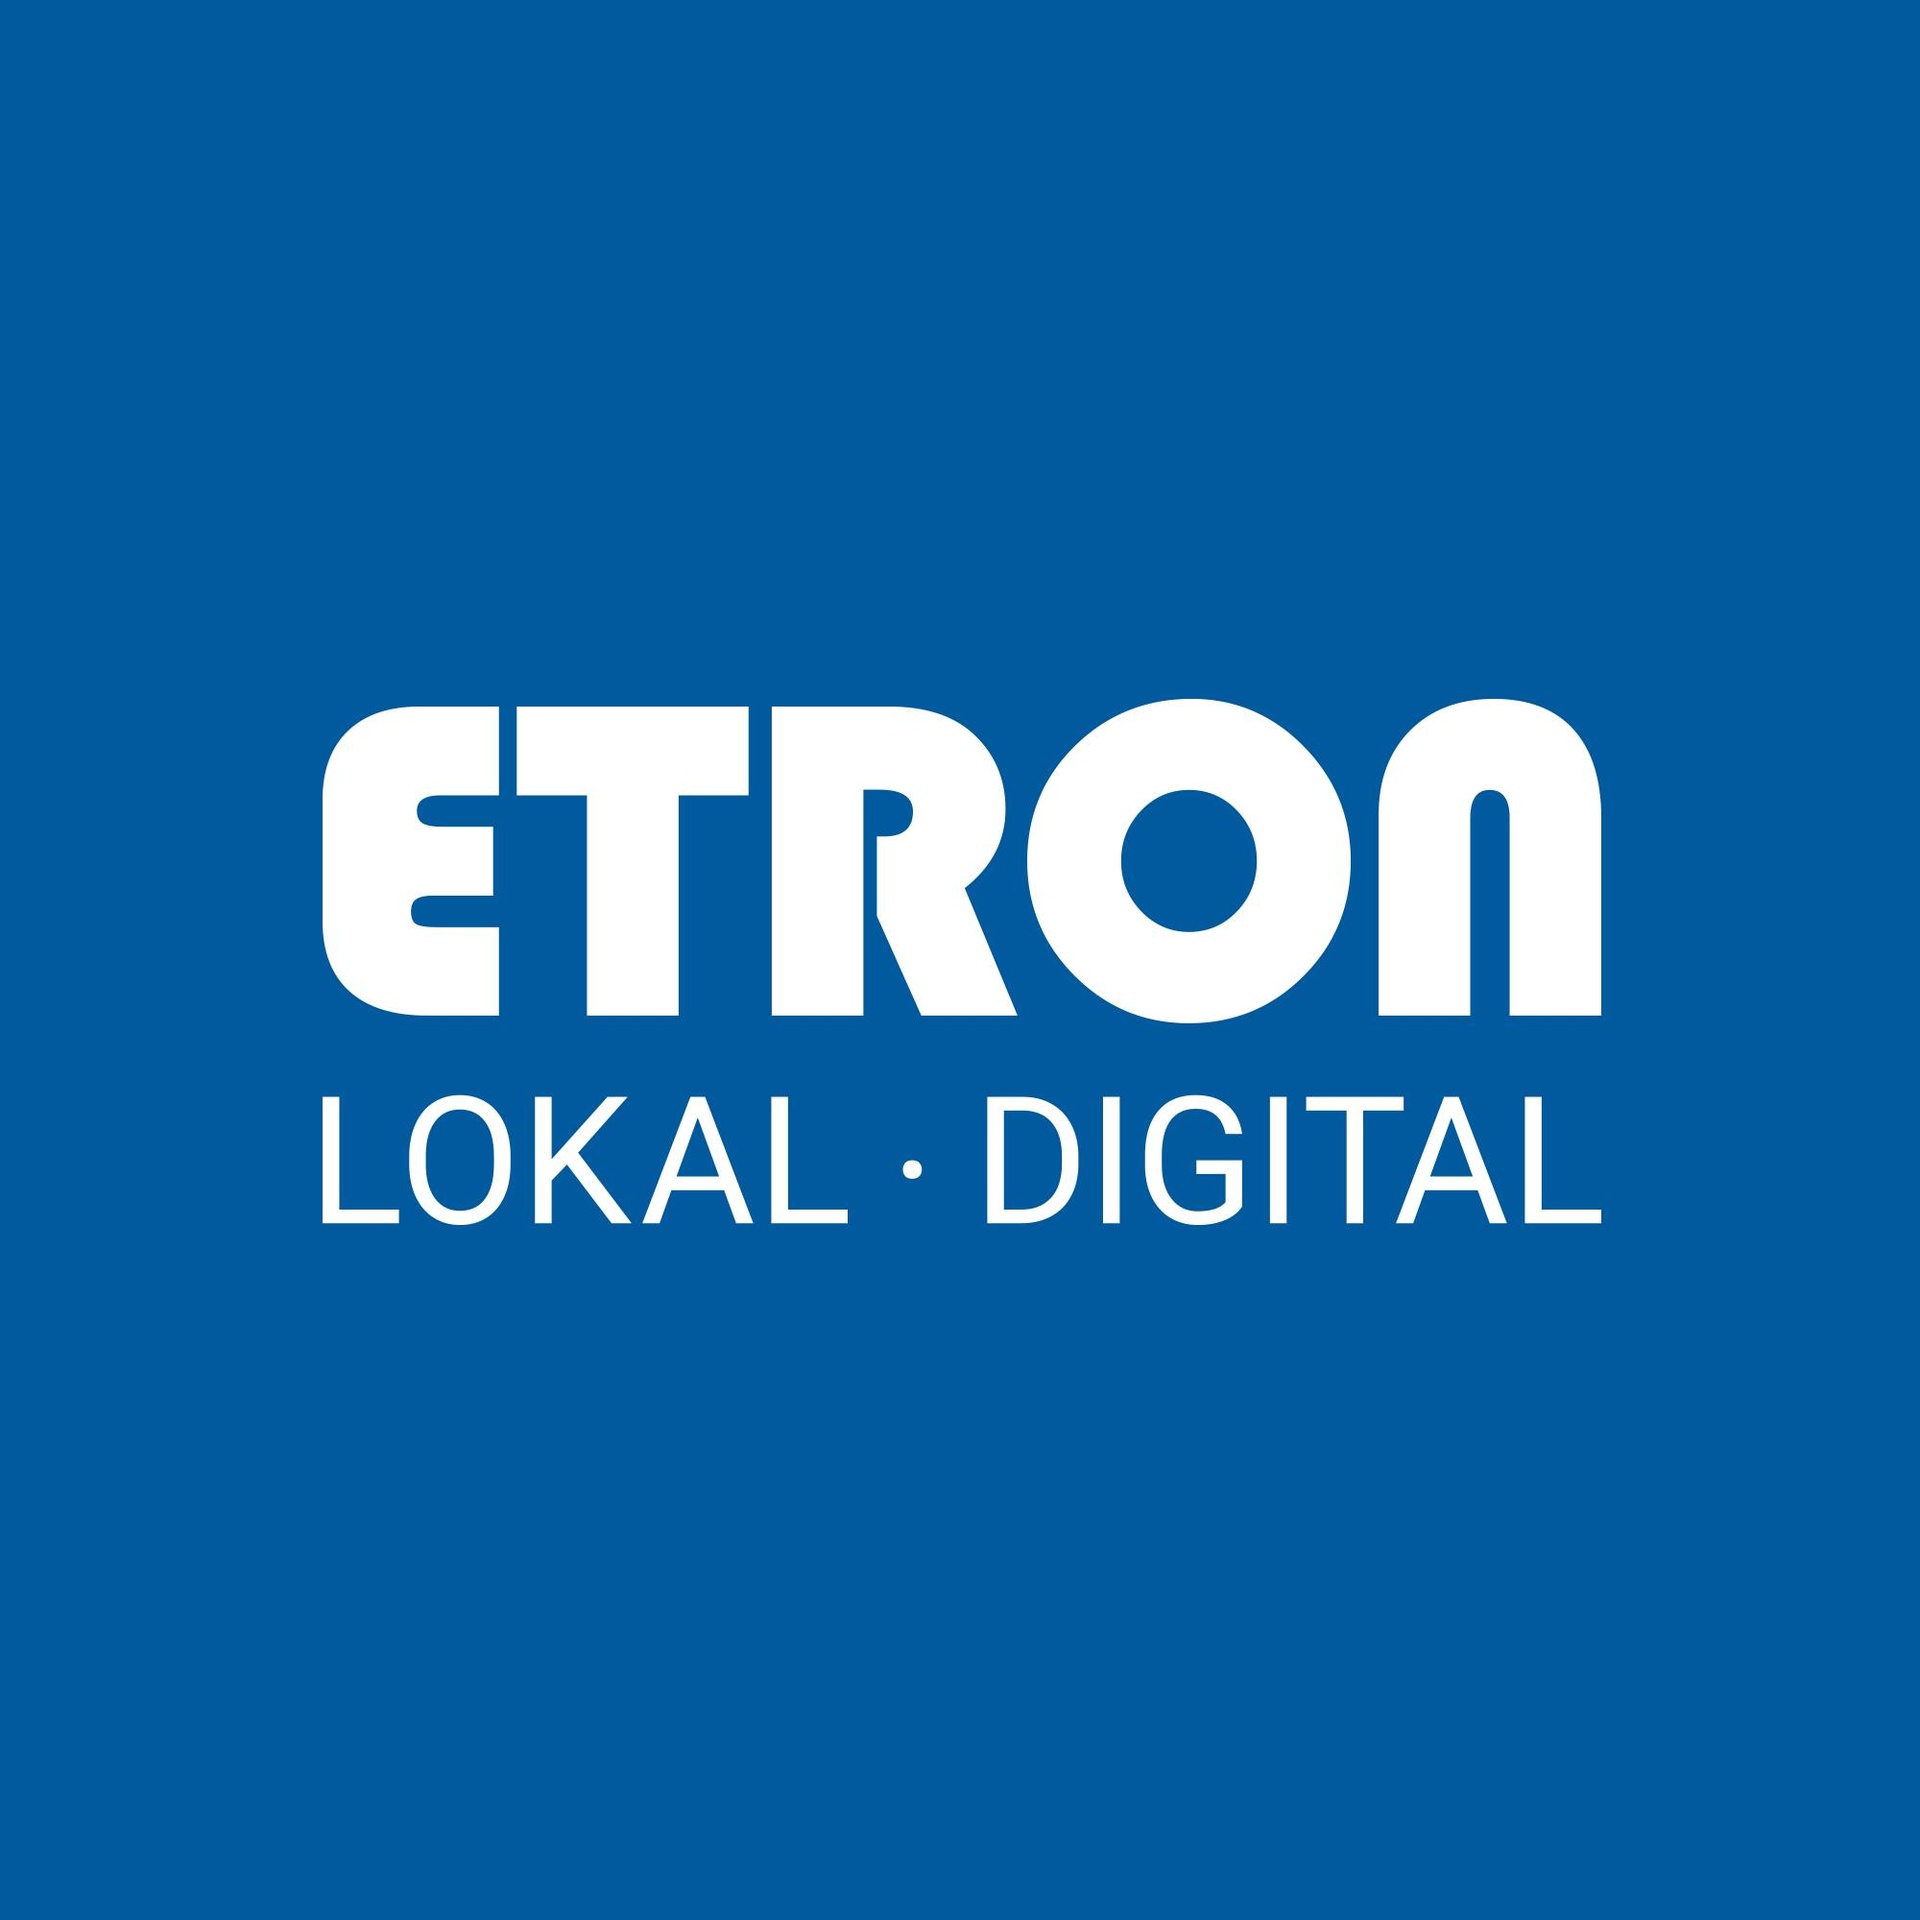 ETRON Softwareentwicklungs- und Vertriebs GmbH